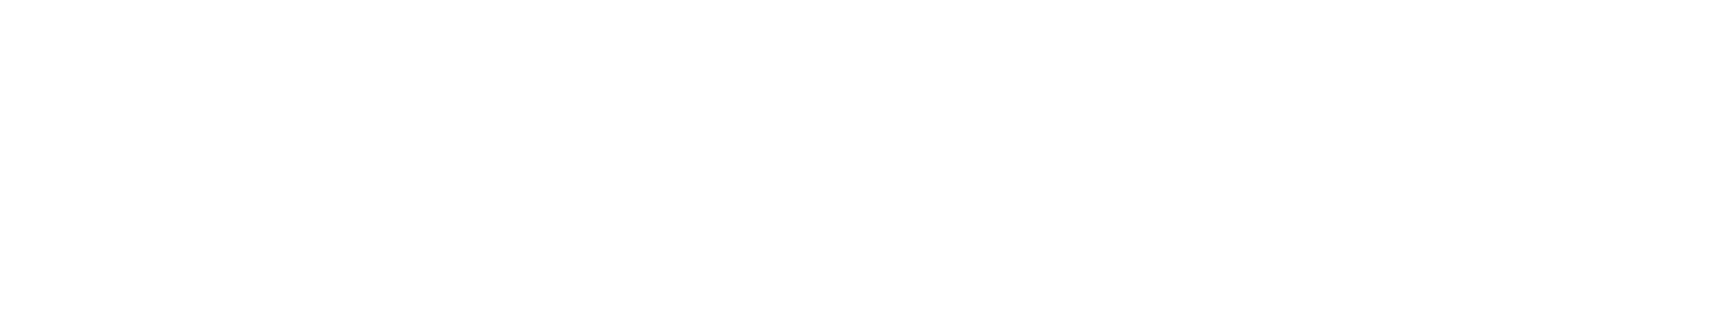 Malalcahuello Thermal Hotel & Spa